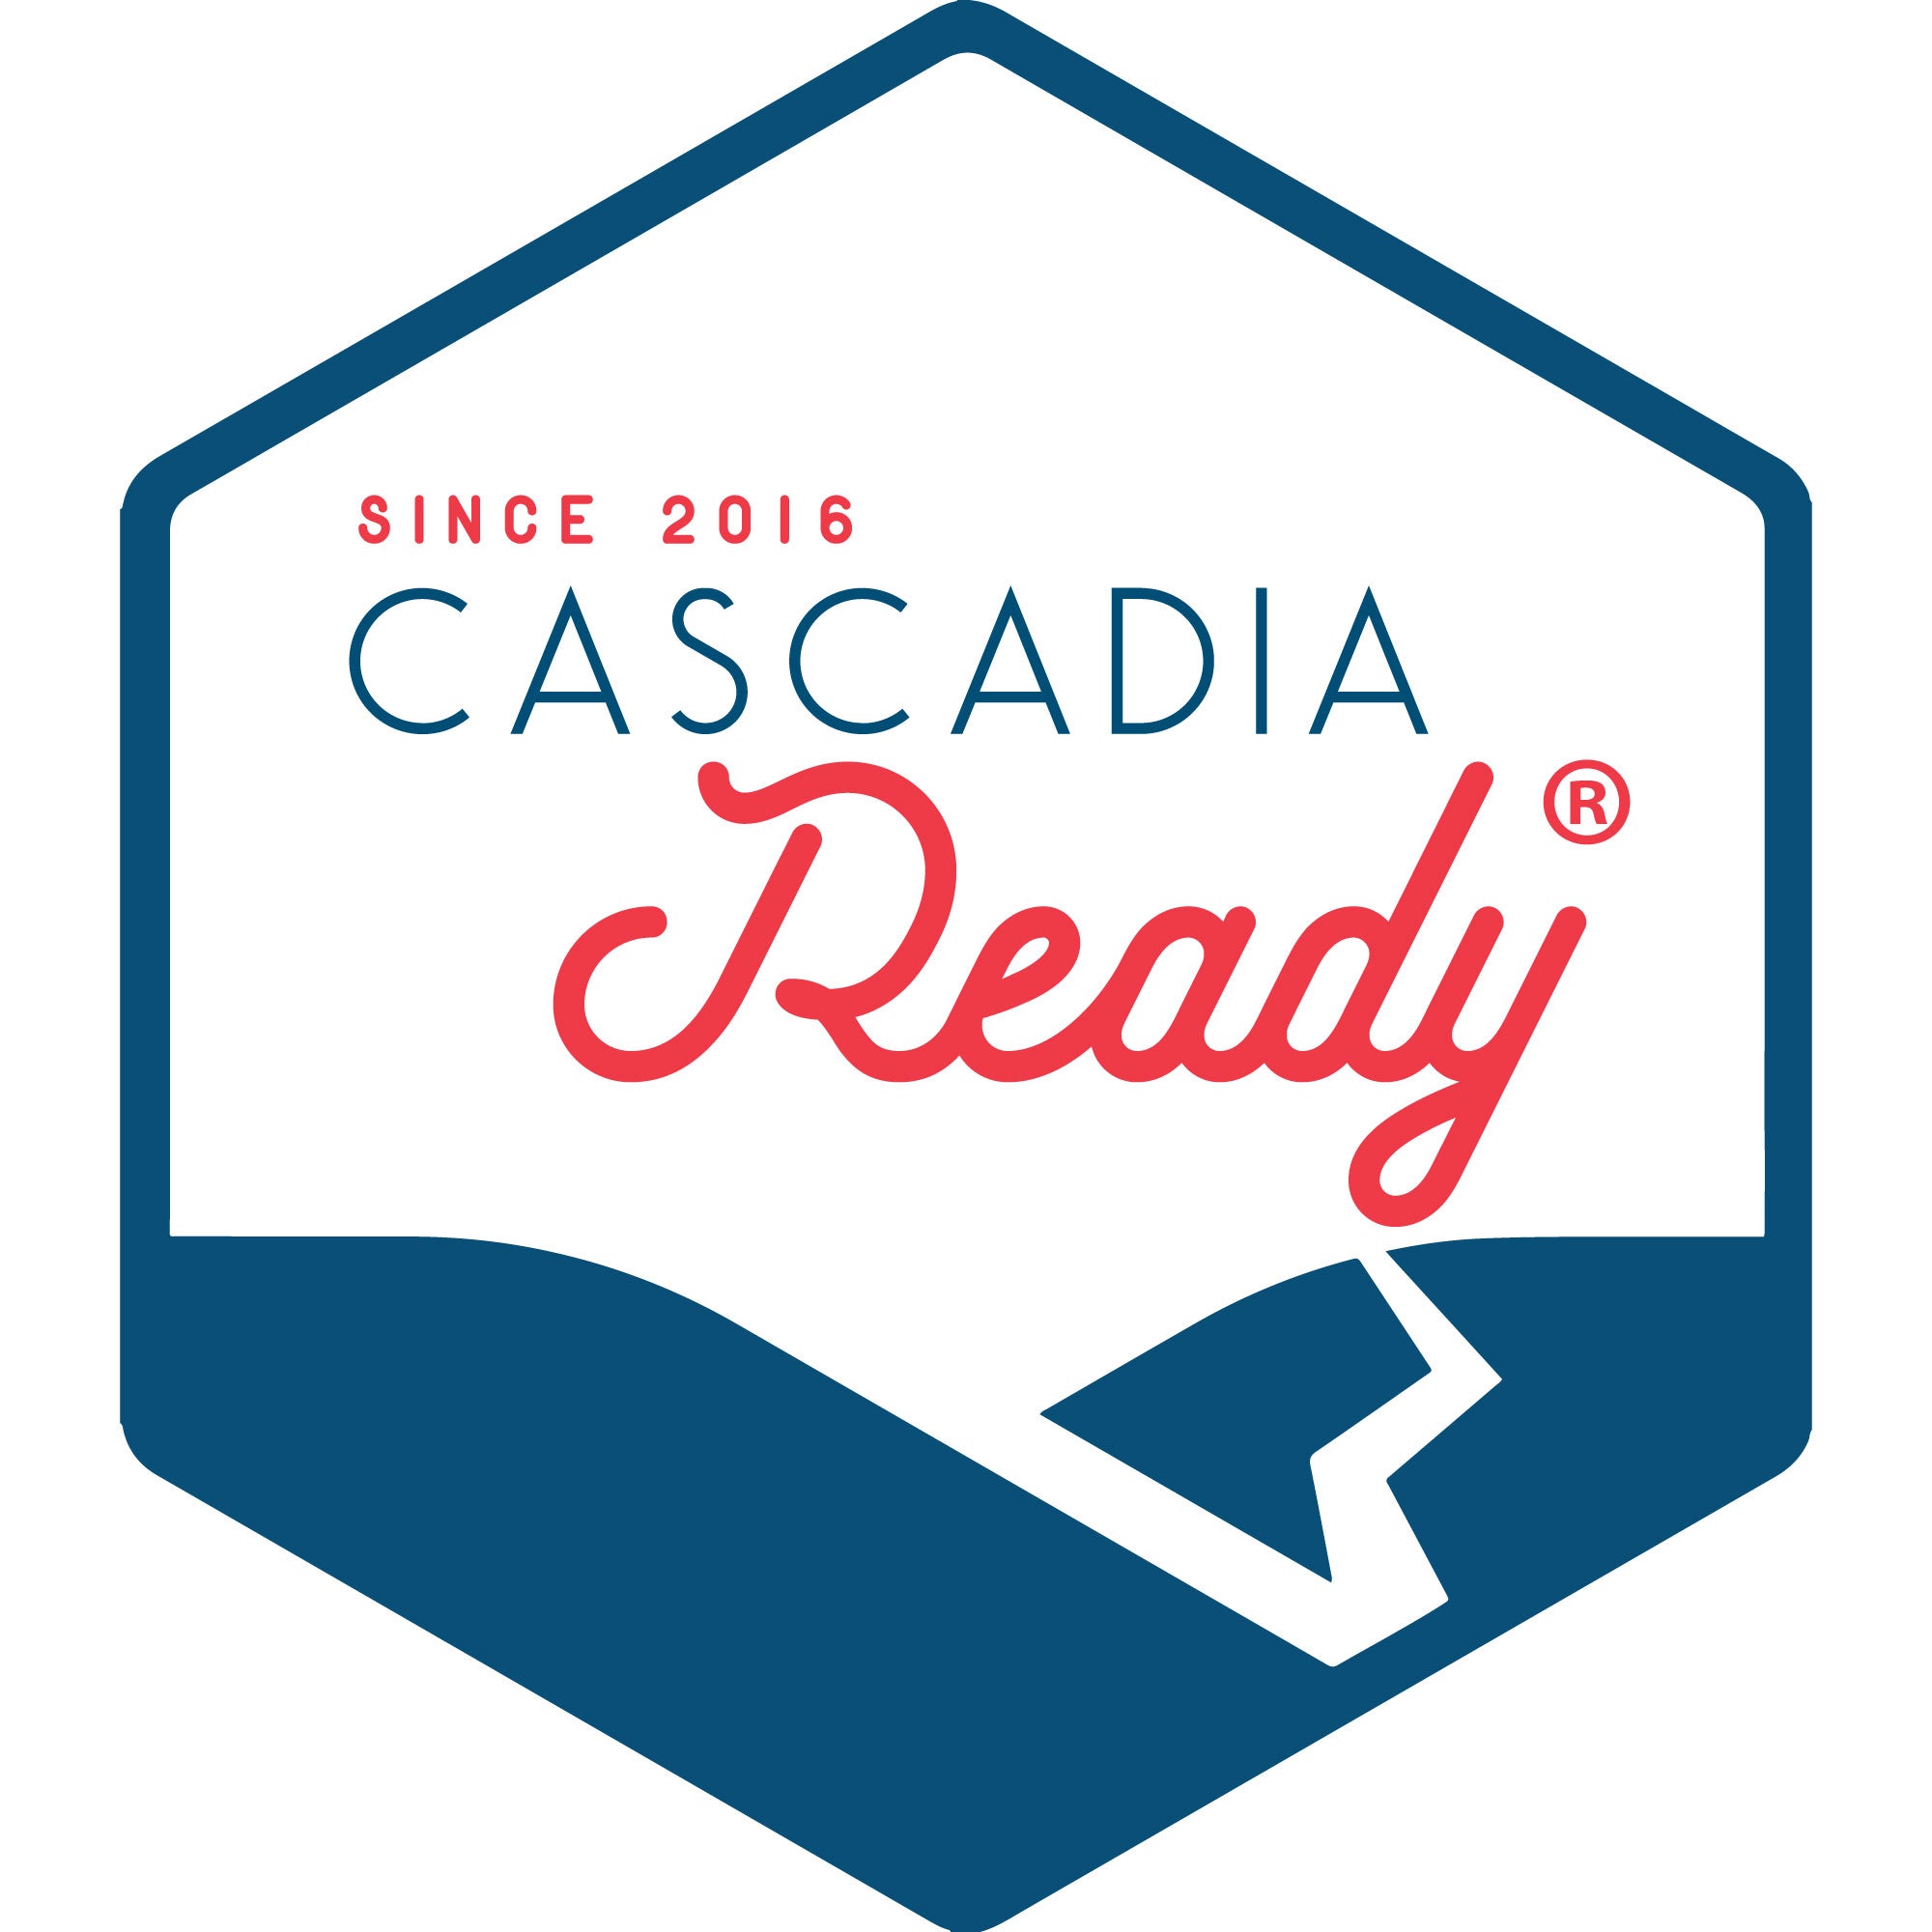 Cascadia Ready – Cascadia Quake Kits